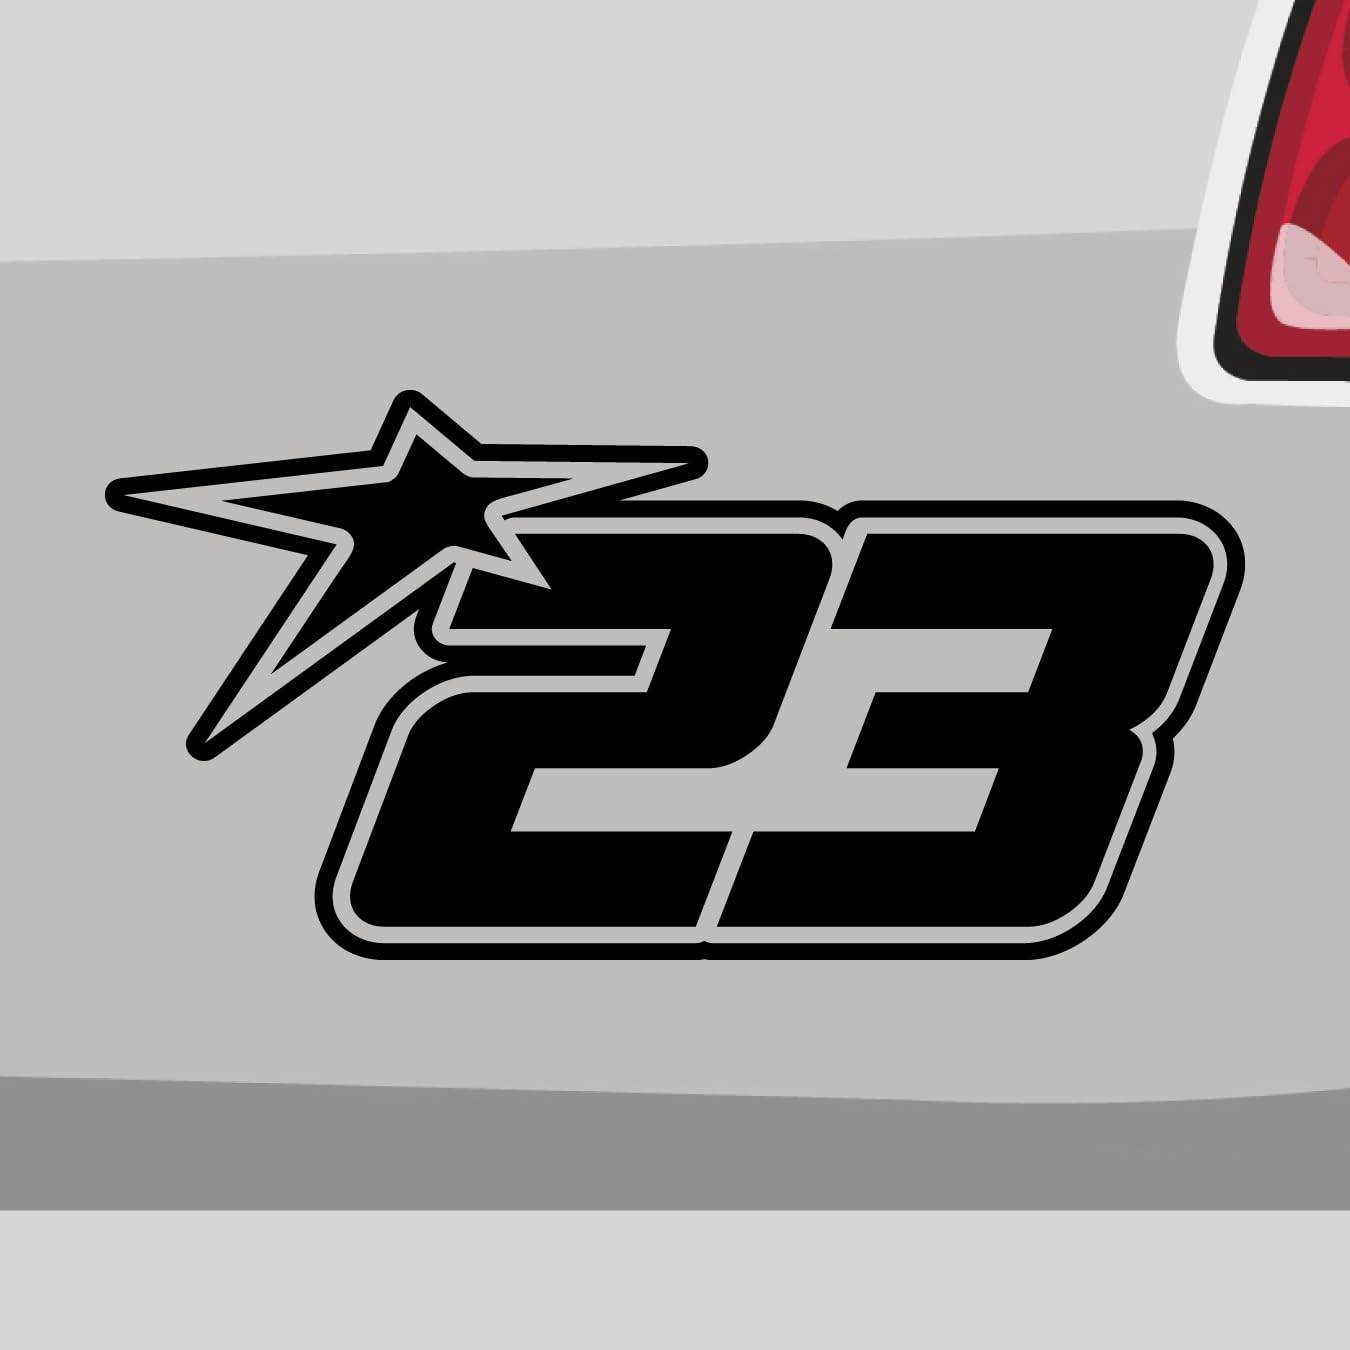 Stickerfreaks Startnummer 23 Aufkleber Race Track Sticker Star Stern Auto Bike Decal Vinyl JDM Aufkleber Größe: 10x5cm (S) | Farbe: 10-weiß | Racenumber Sticker Kleber Deko Tuning Zahl von Stickerfreaks